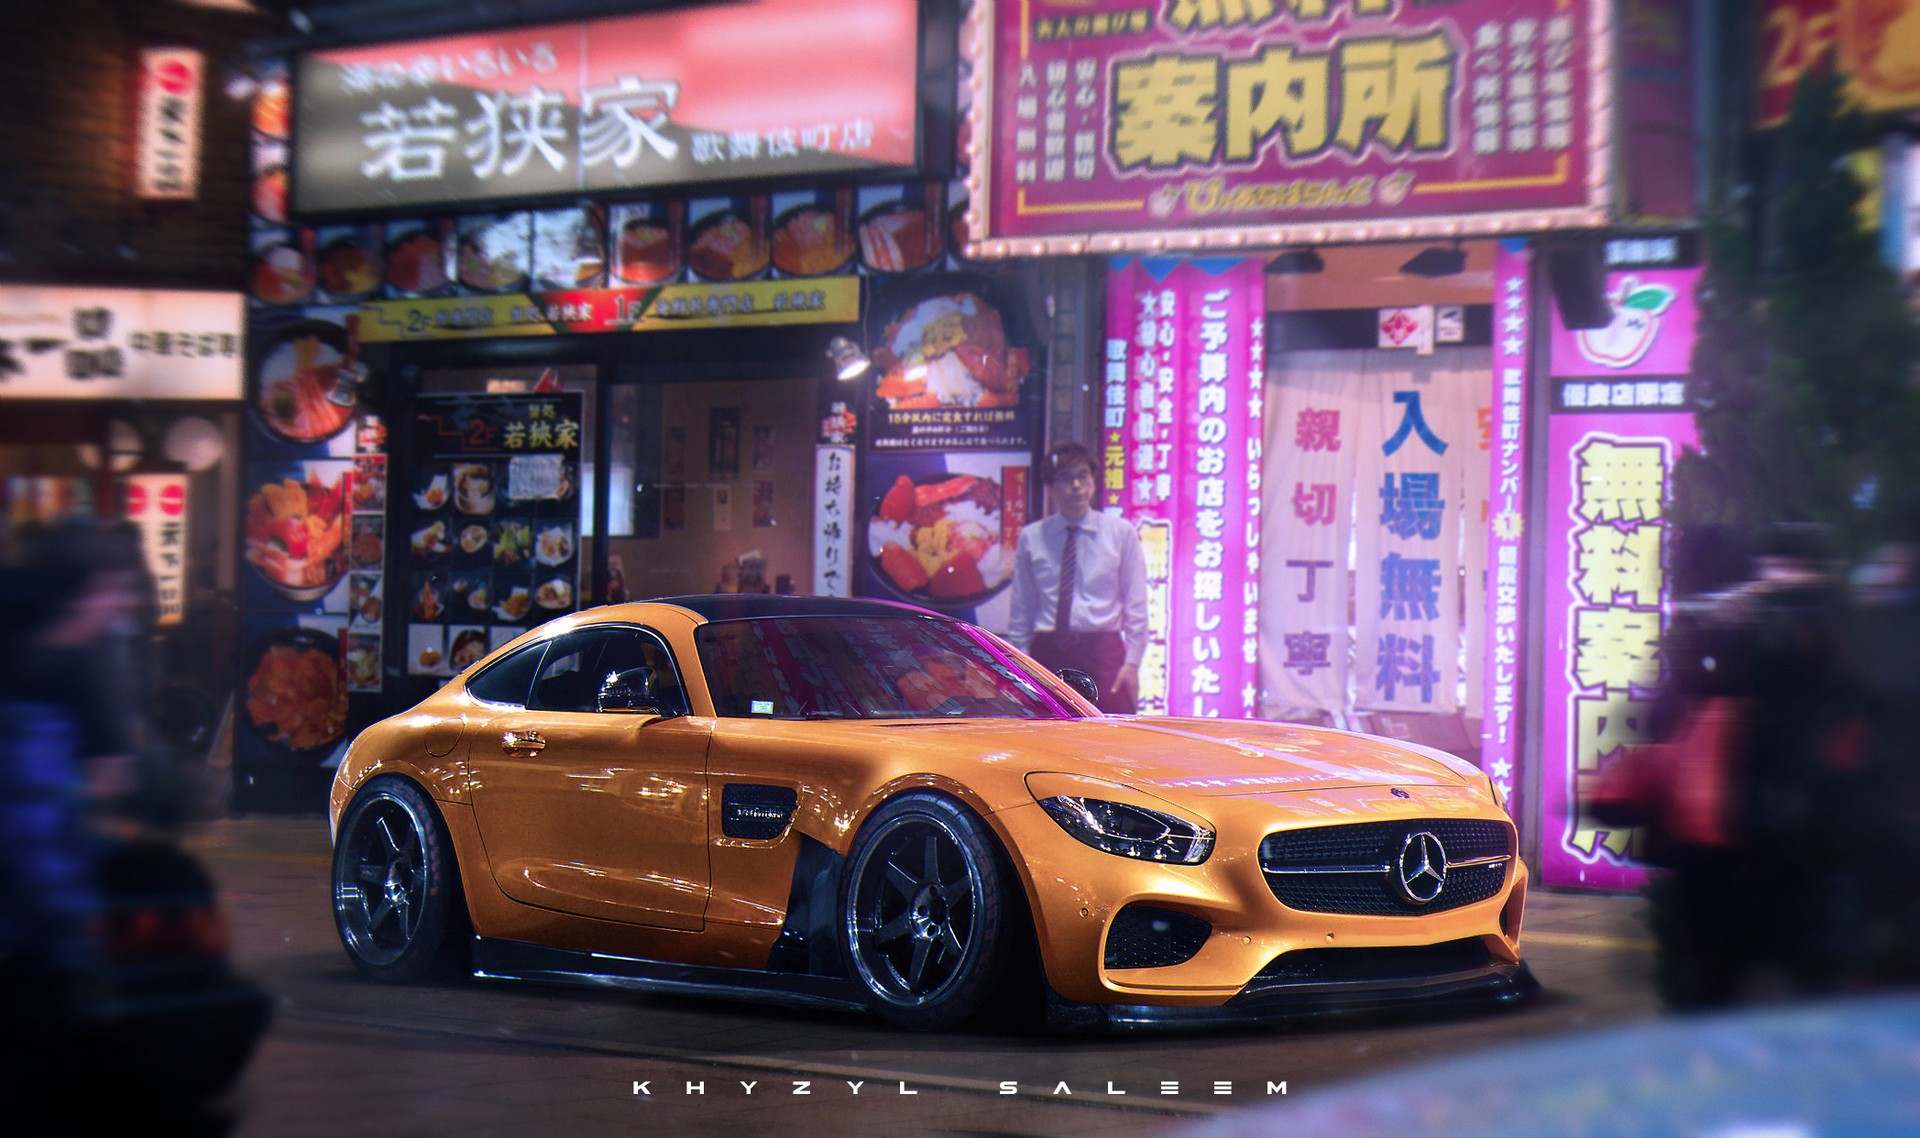 Car Mercedes Benz AMG GT Mercedes AMG Render Artwork Tokyo Japan